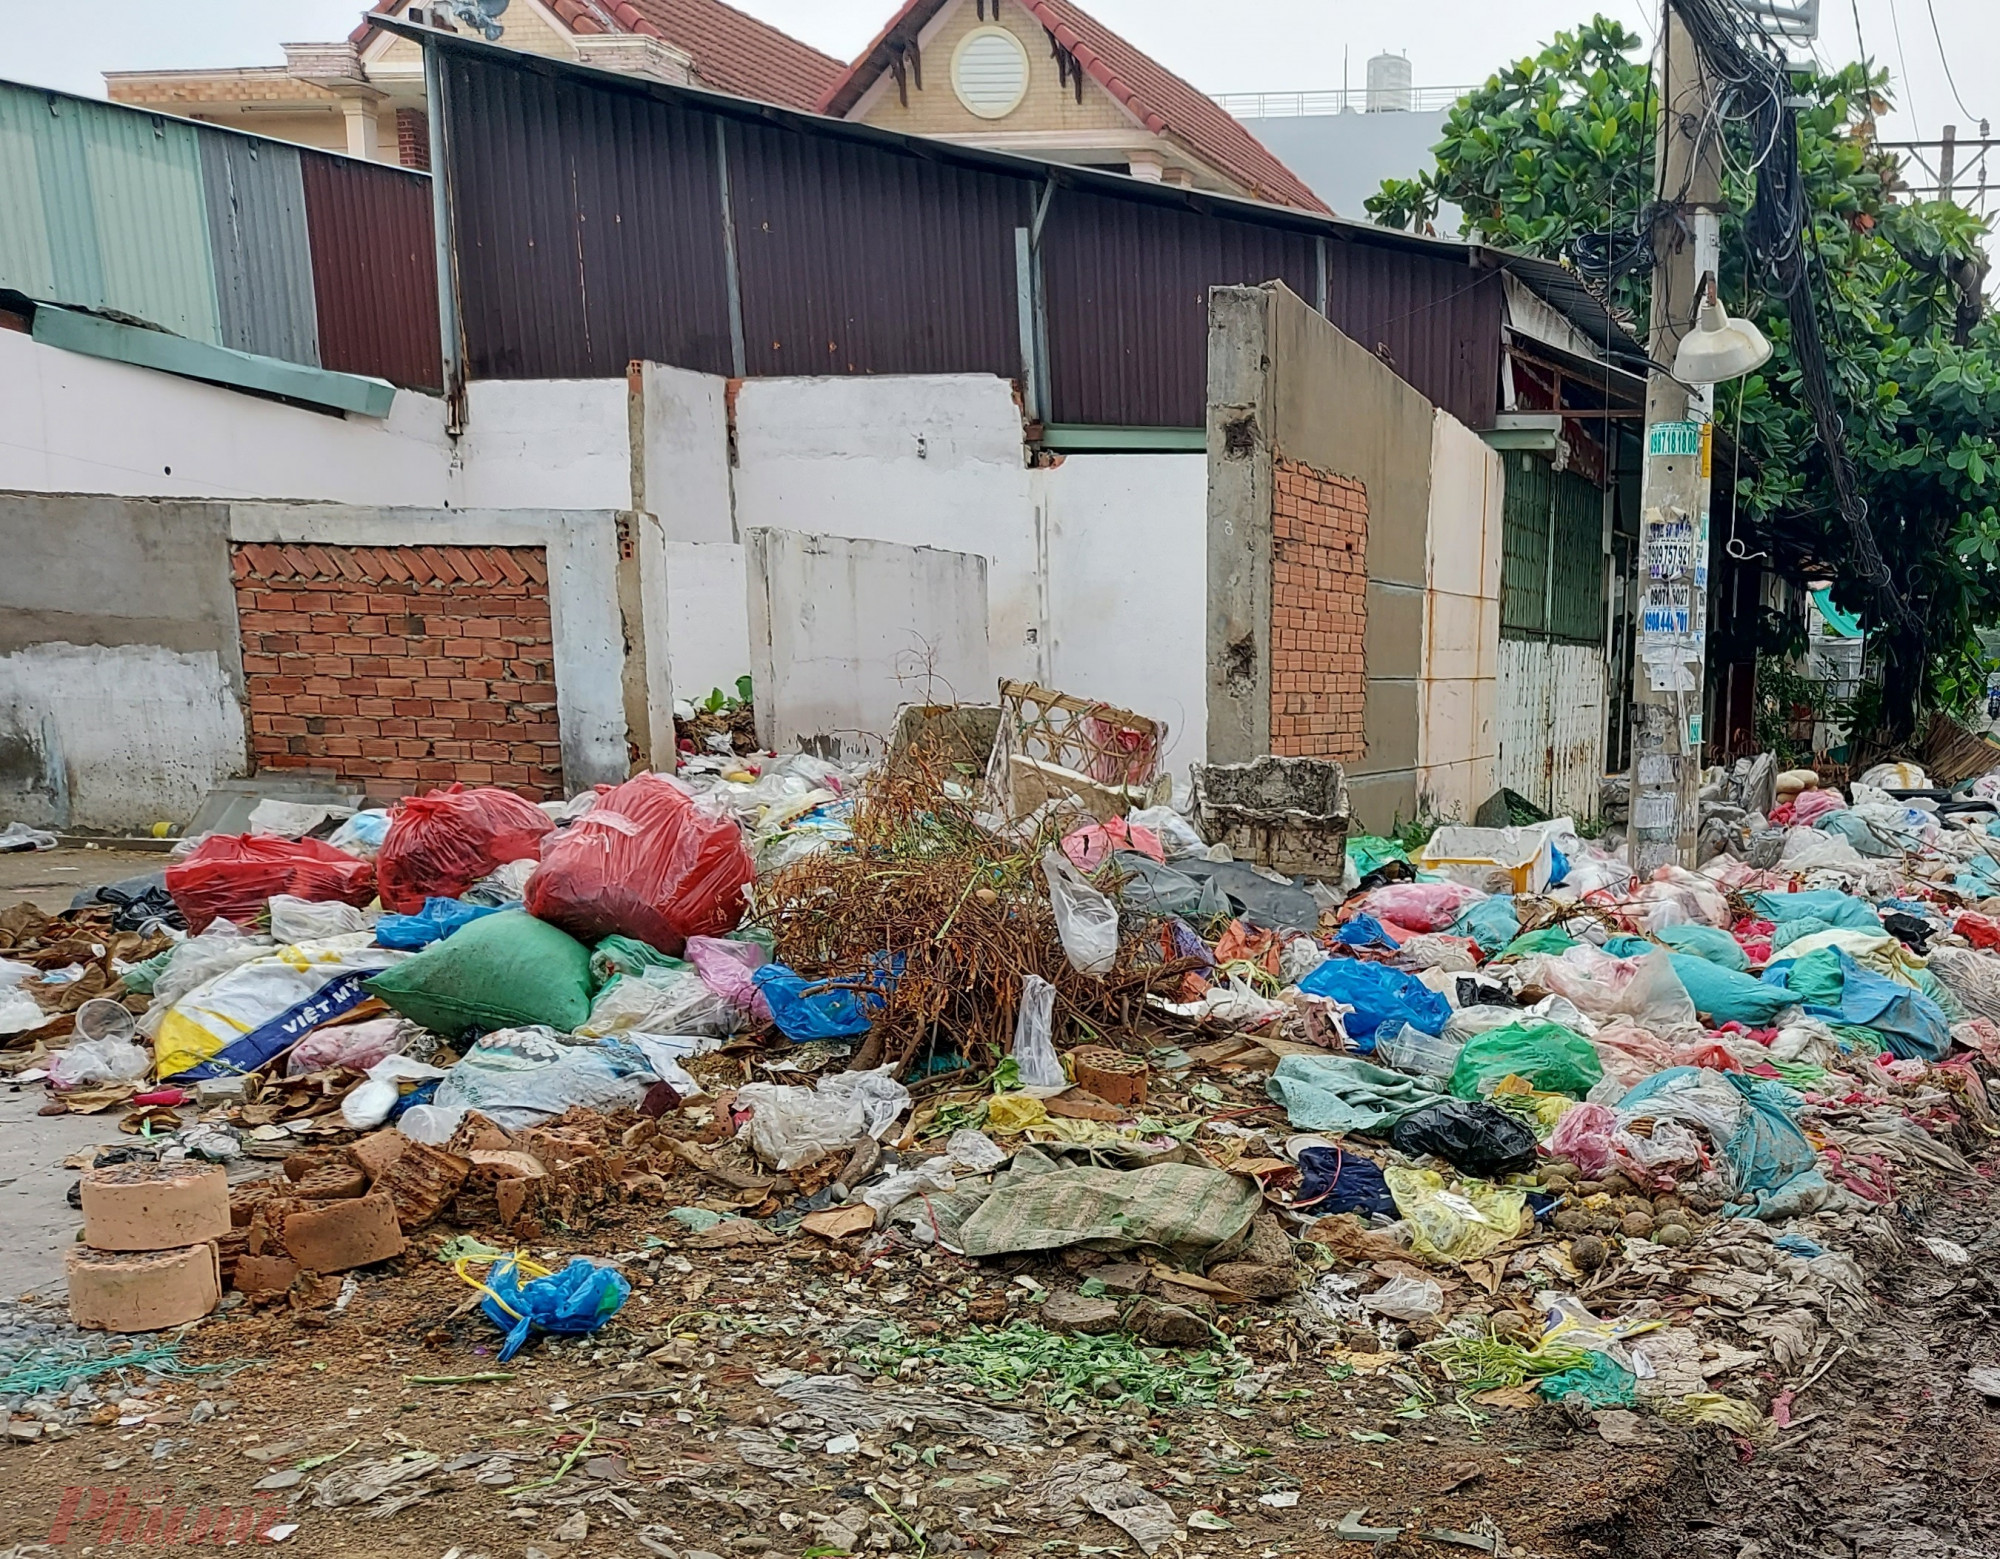 Nhiều người sau khi họp chợ còn vứt rác thải bừa bãi, tạo ra những đống rác lớn làm ảnh hưởng đời sống của người dân sống tại khu dân cư hai bên đường An Dương Vương.